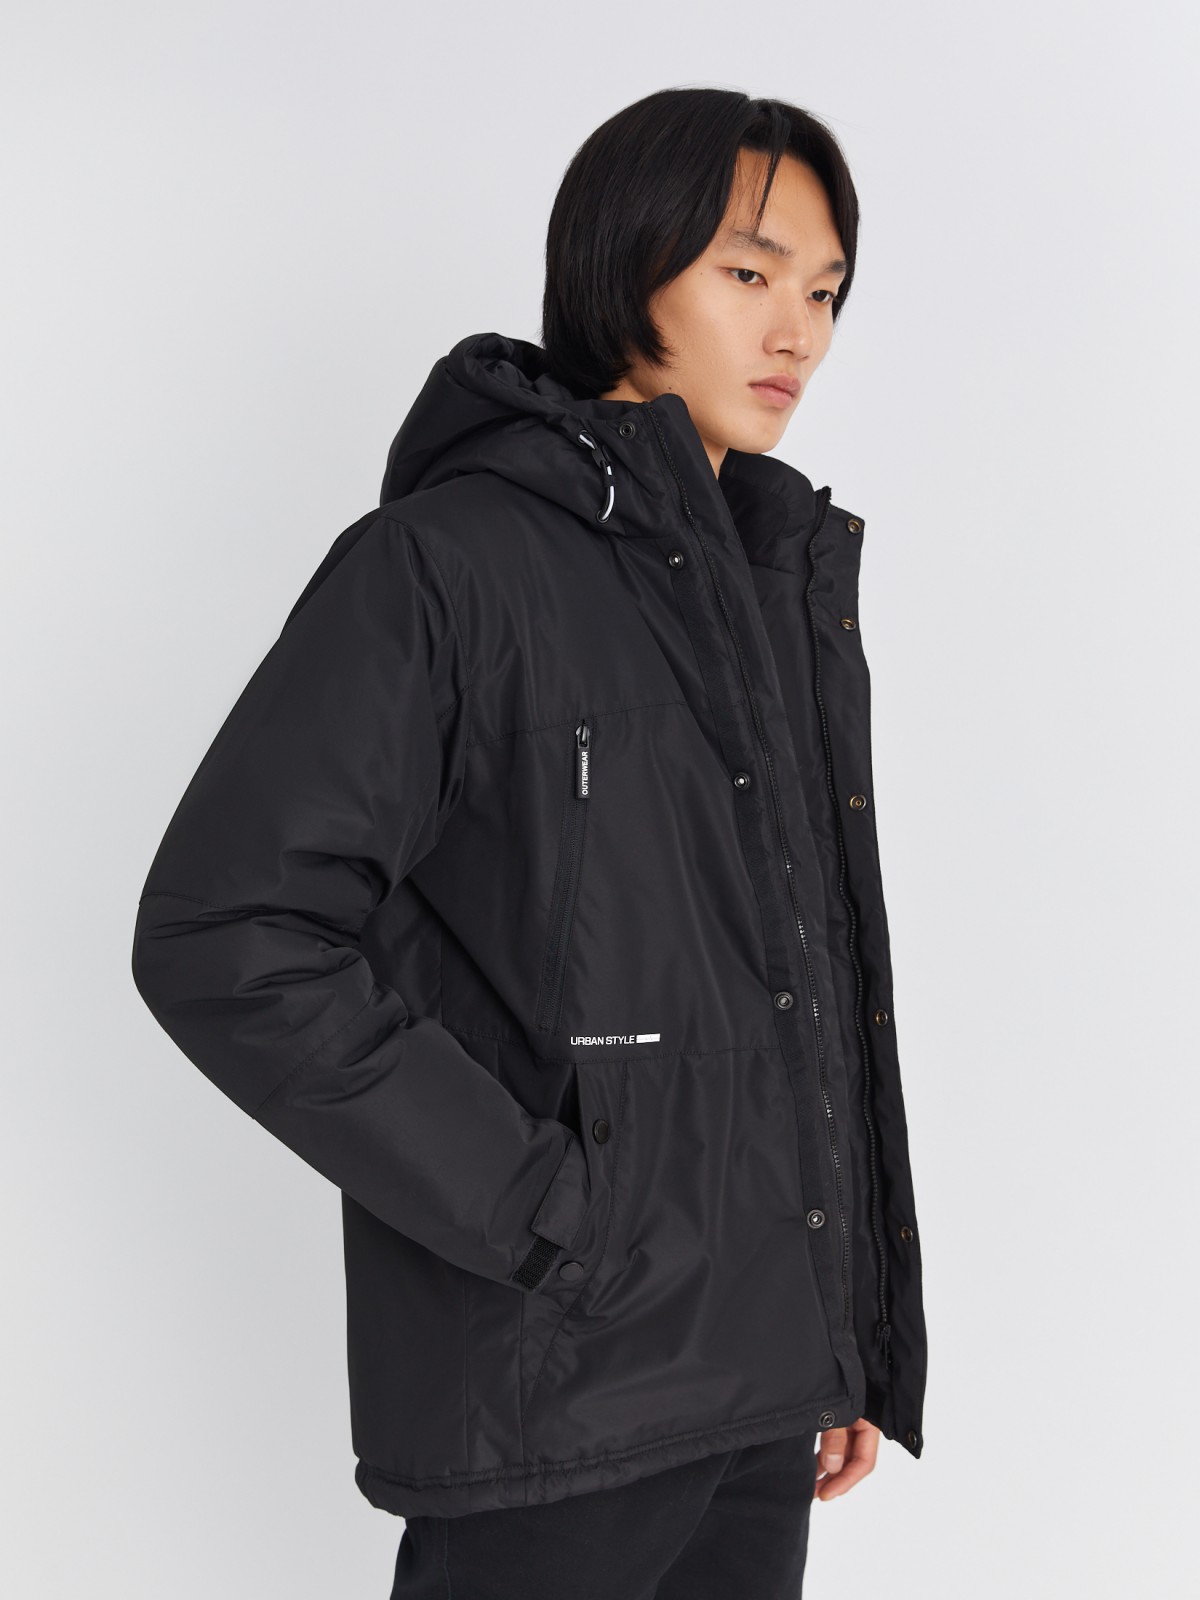 Тёплая куртка удлинённого силуэта с капюшоном на синтепоне zolla 013345102064, цвет черный, размер M